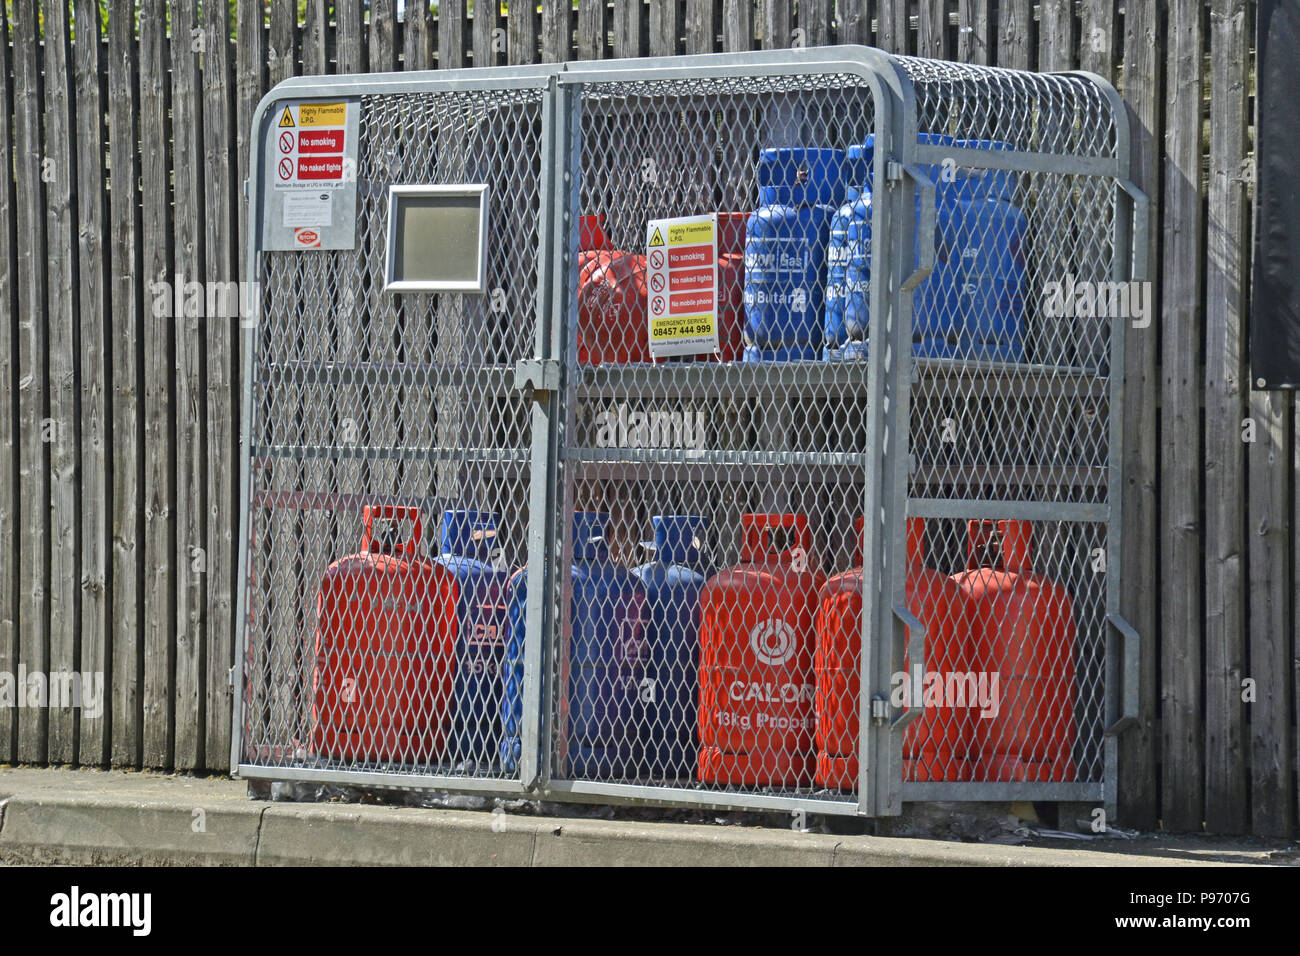 Calor gas bottles on petrol station forecourt, UK Stock Photo